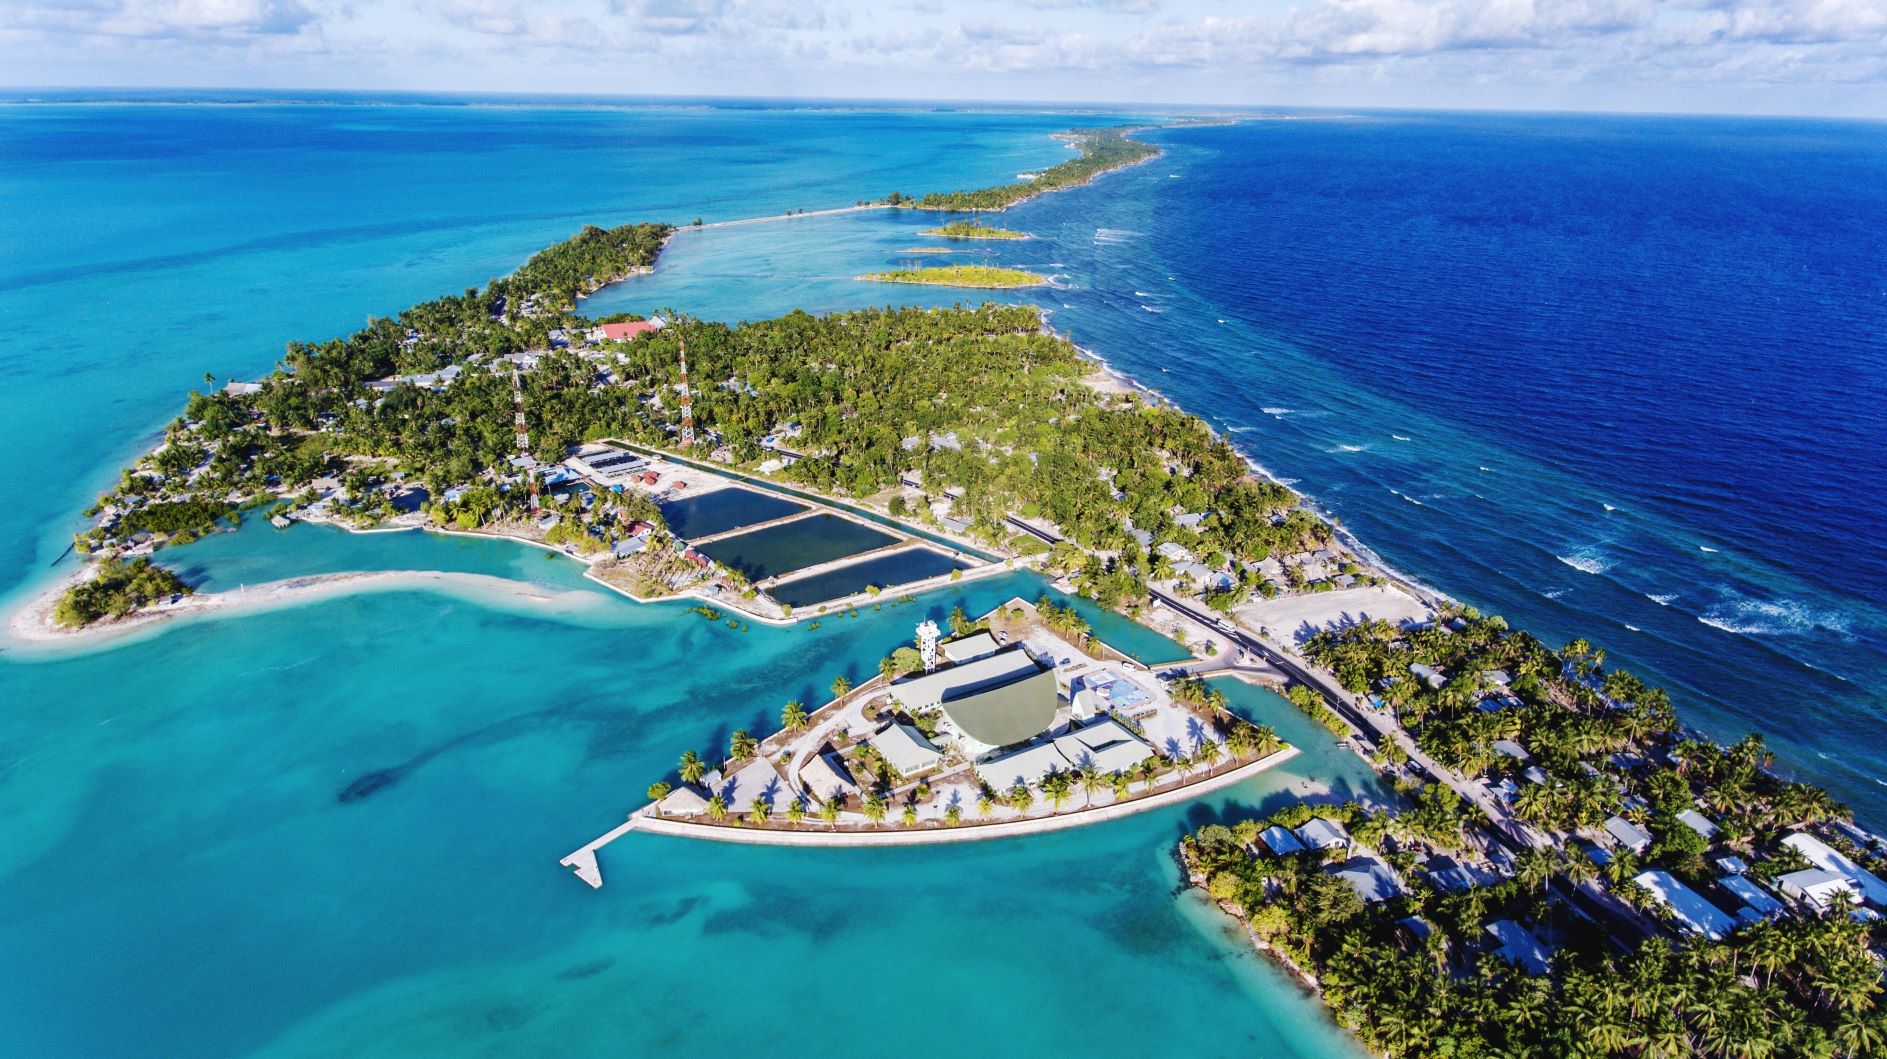 Aerial view of Kiribati